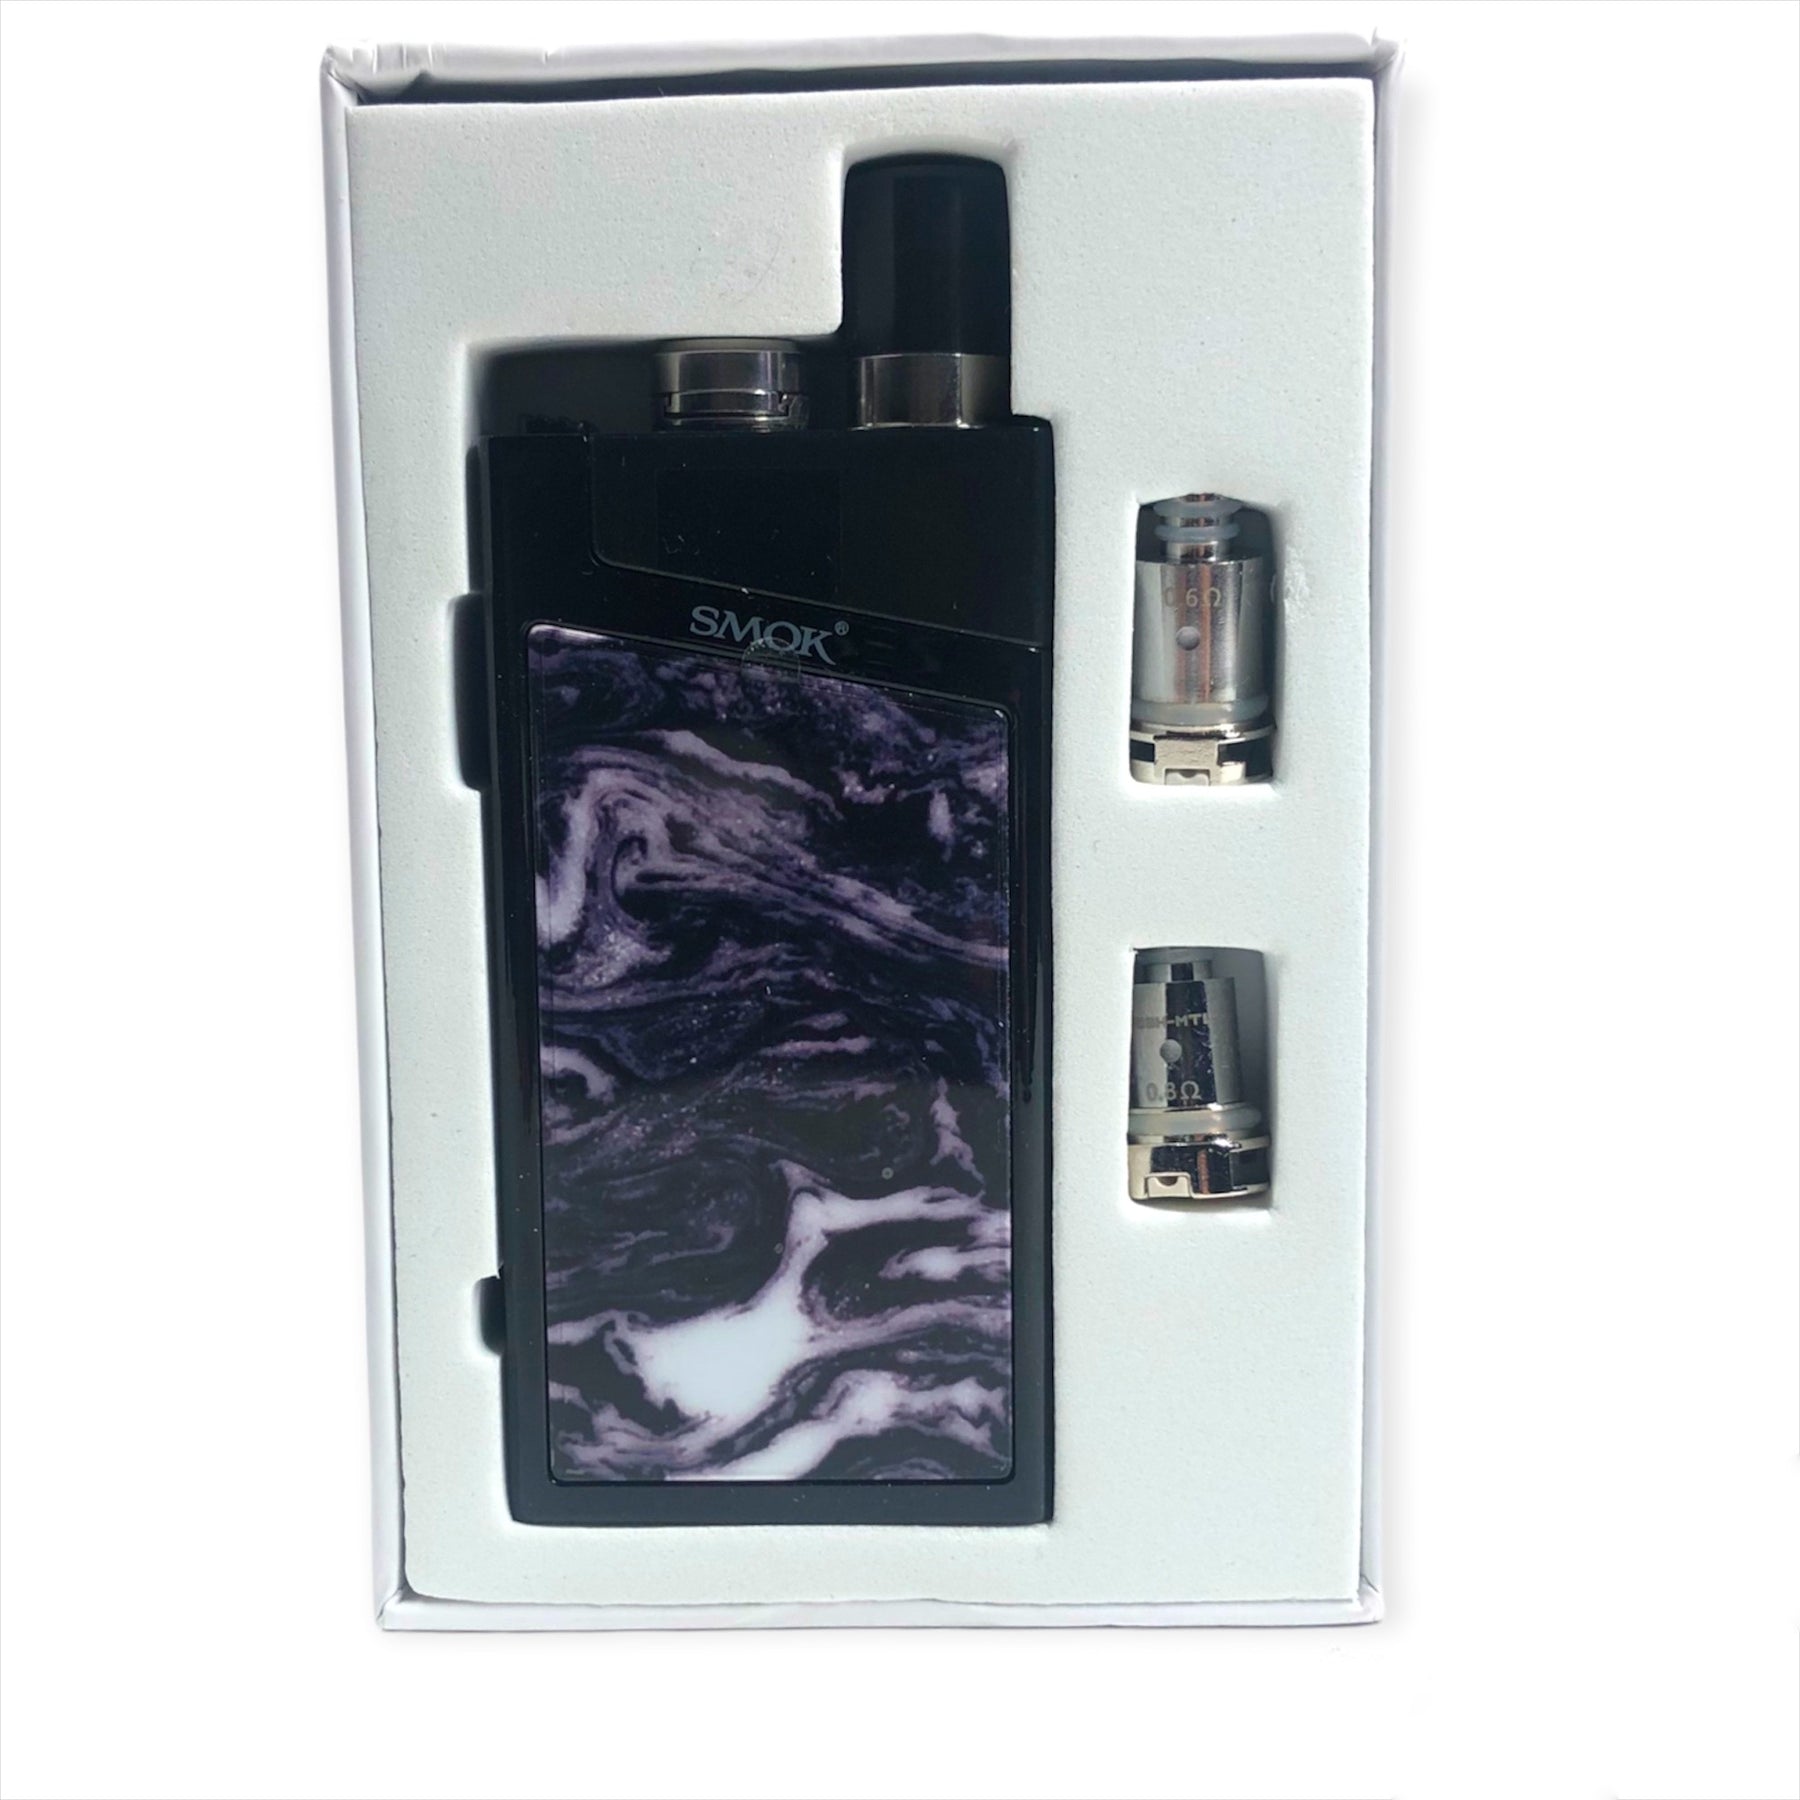 Smok Trinity Alpha Kit 30W Box color Bright black